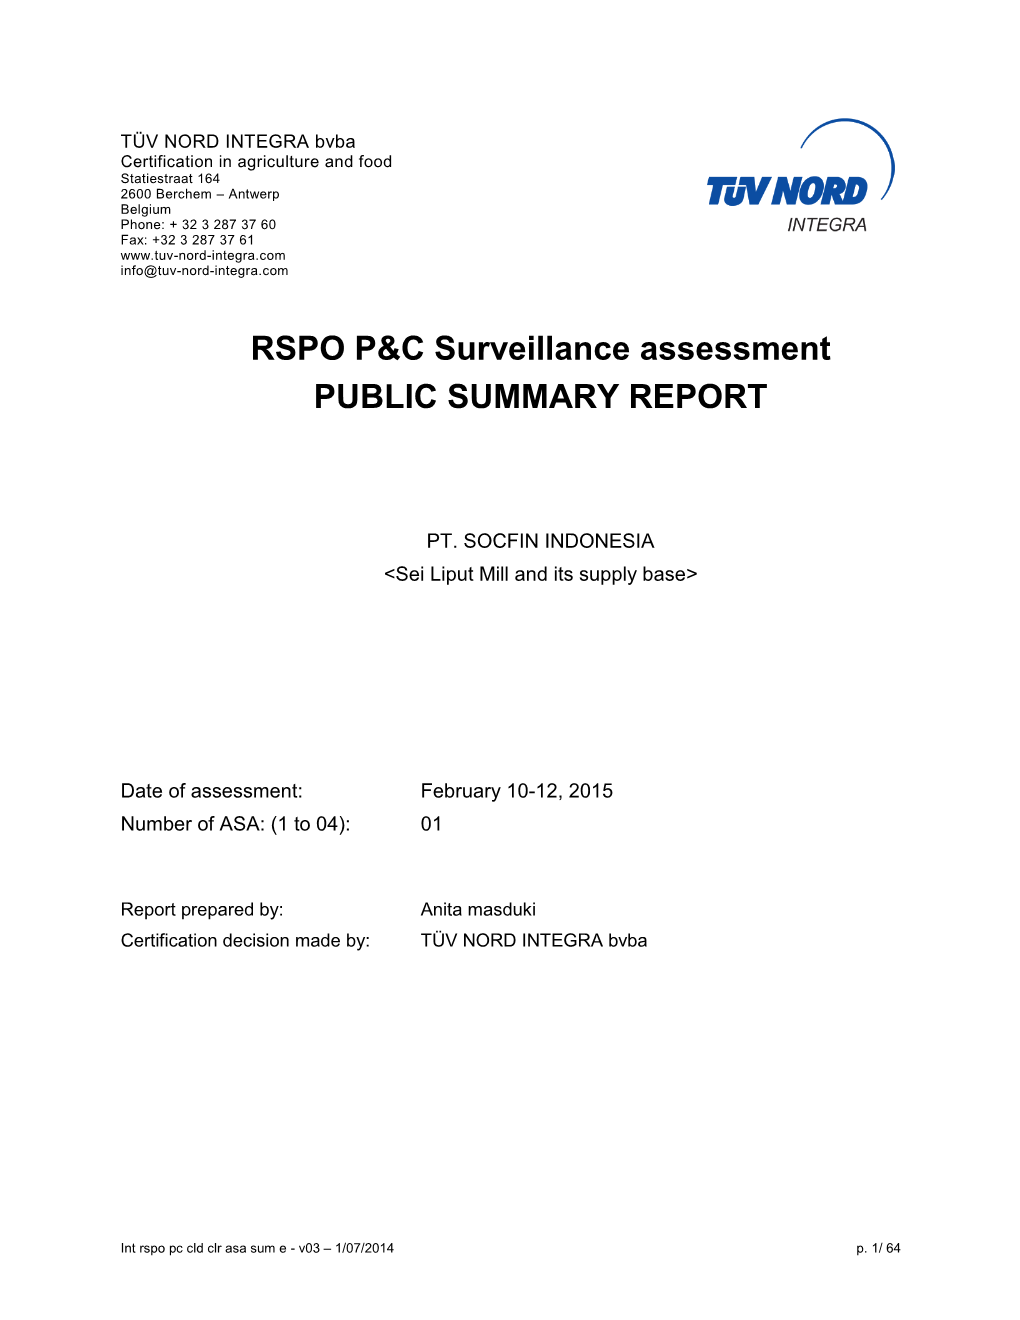 RSPO P&C Surveillance Assessment PUBLIC SUMMARY REPORT